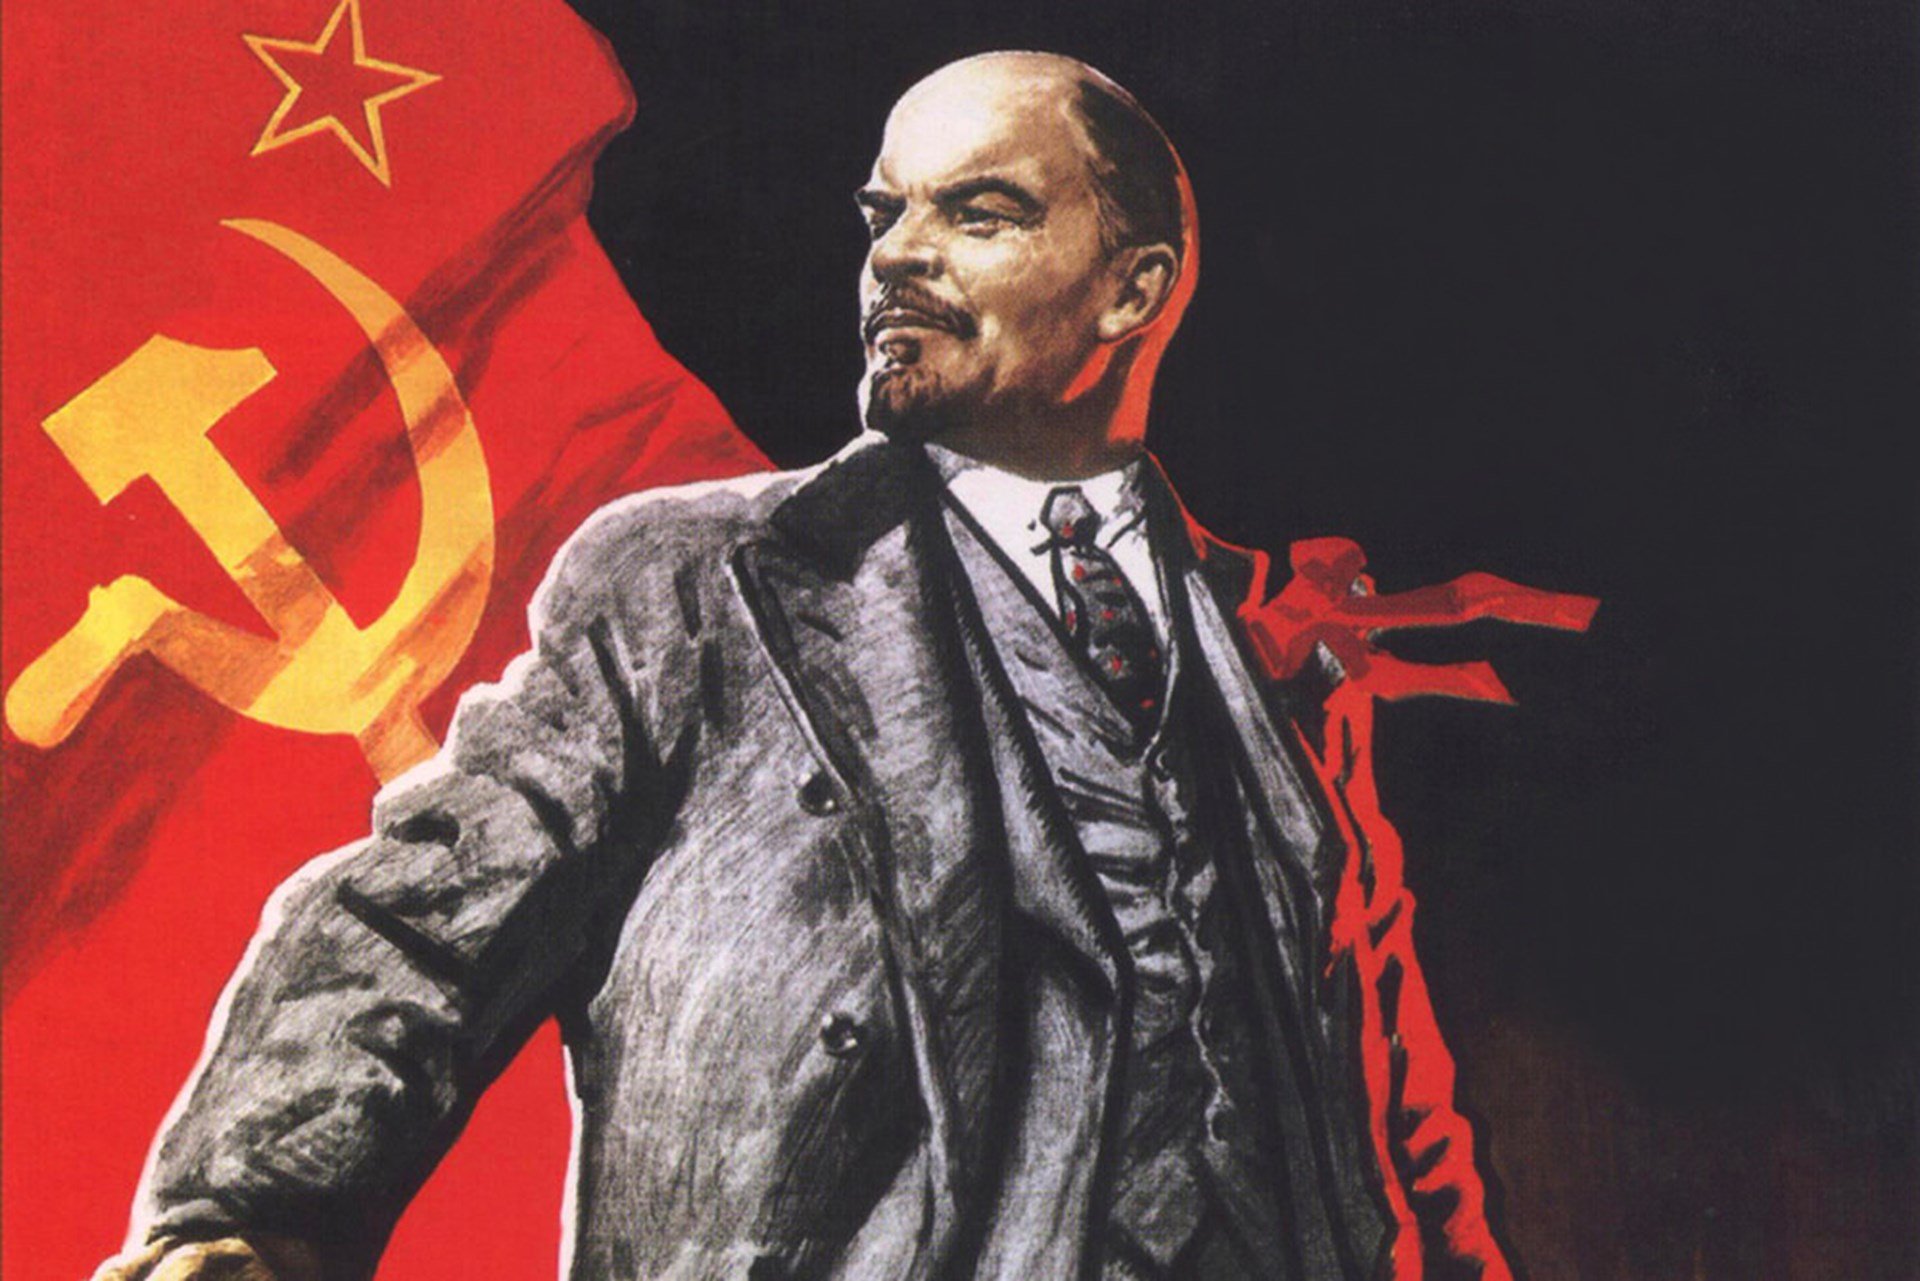 Ленин сколько лет со дня рождения